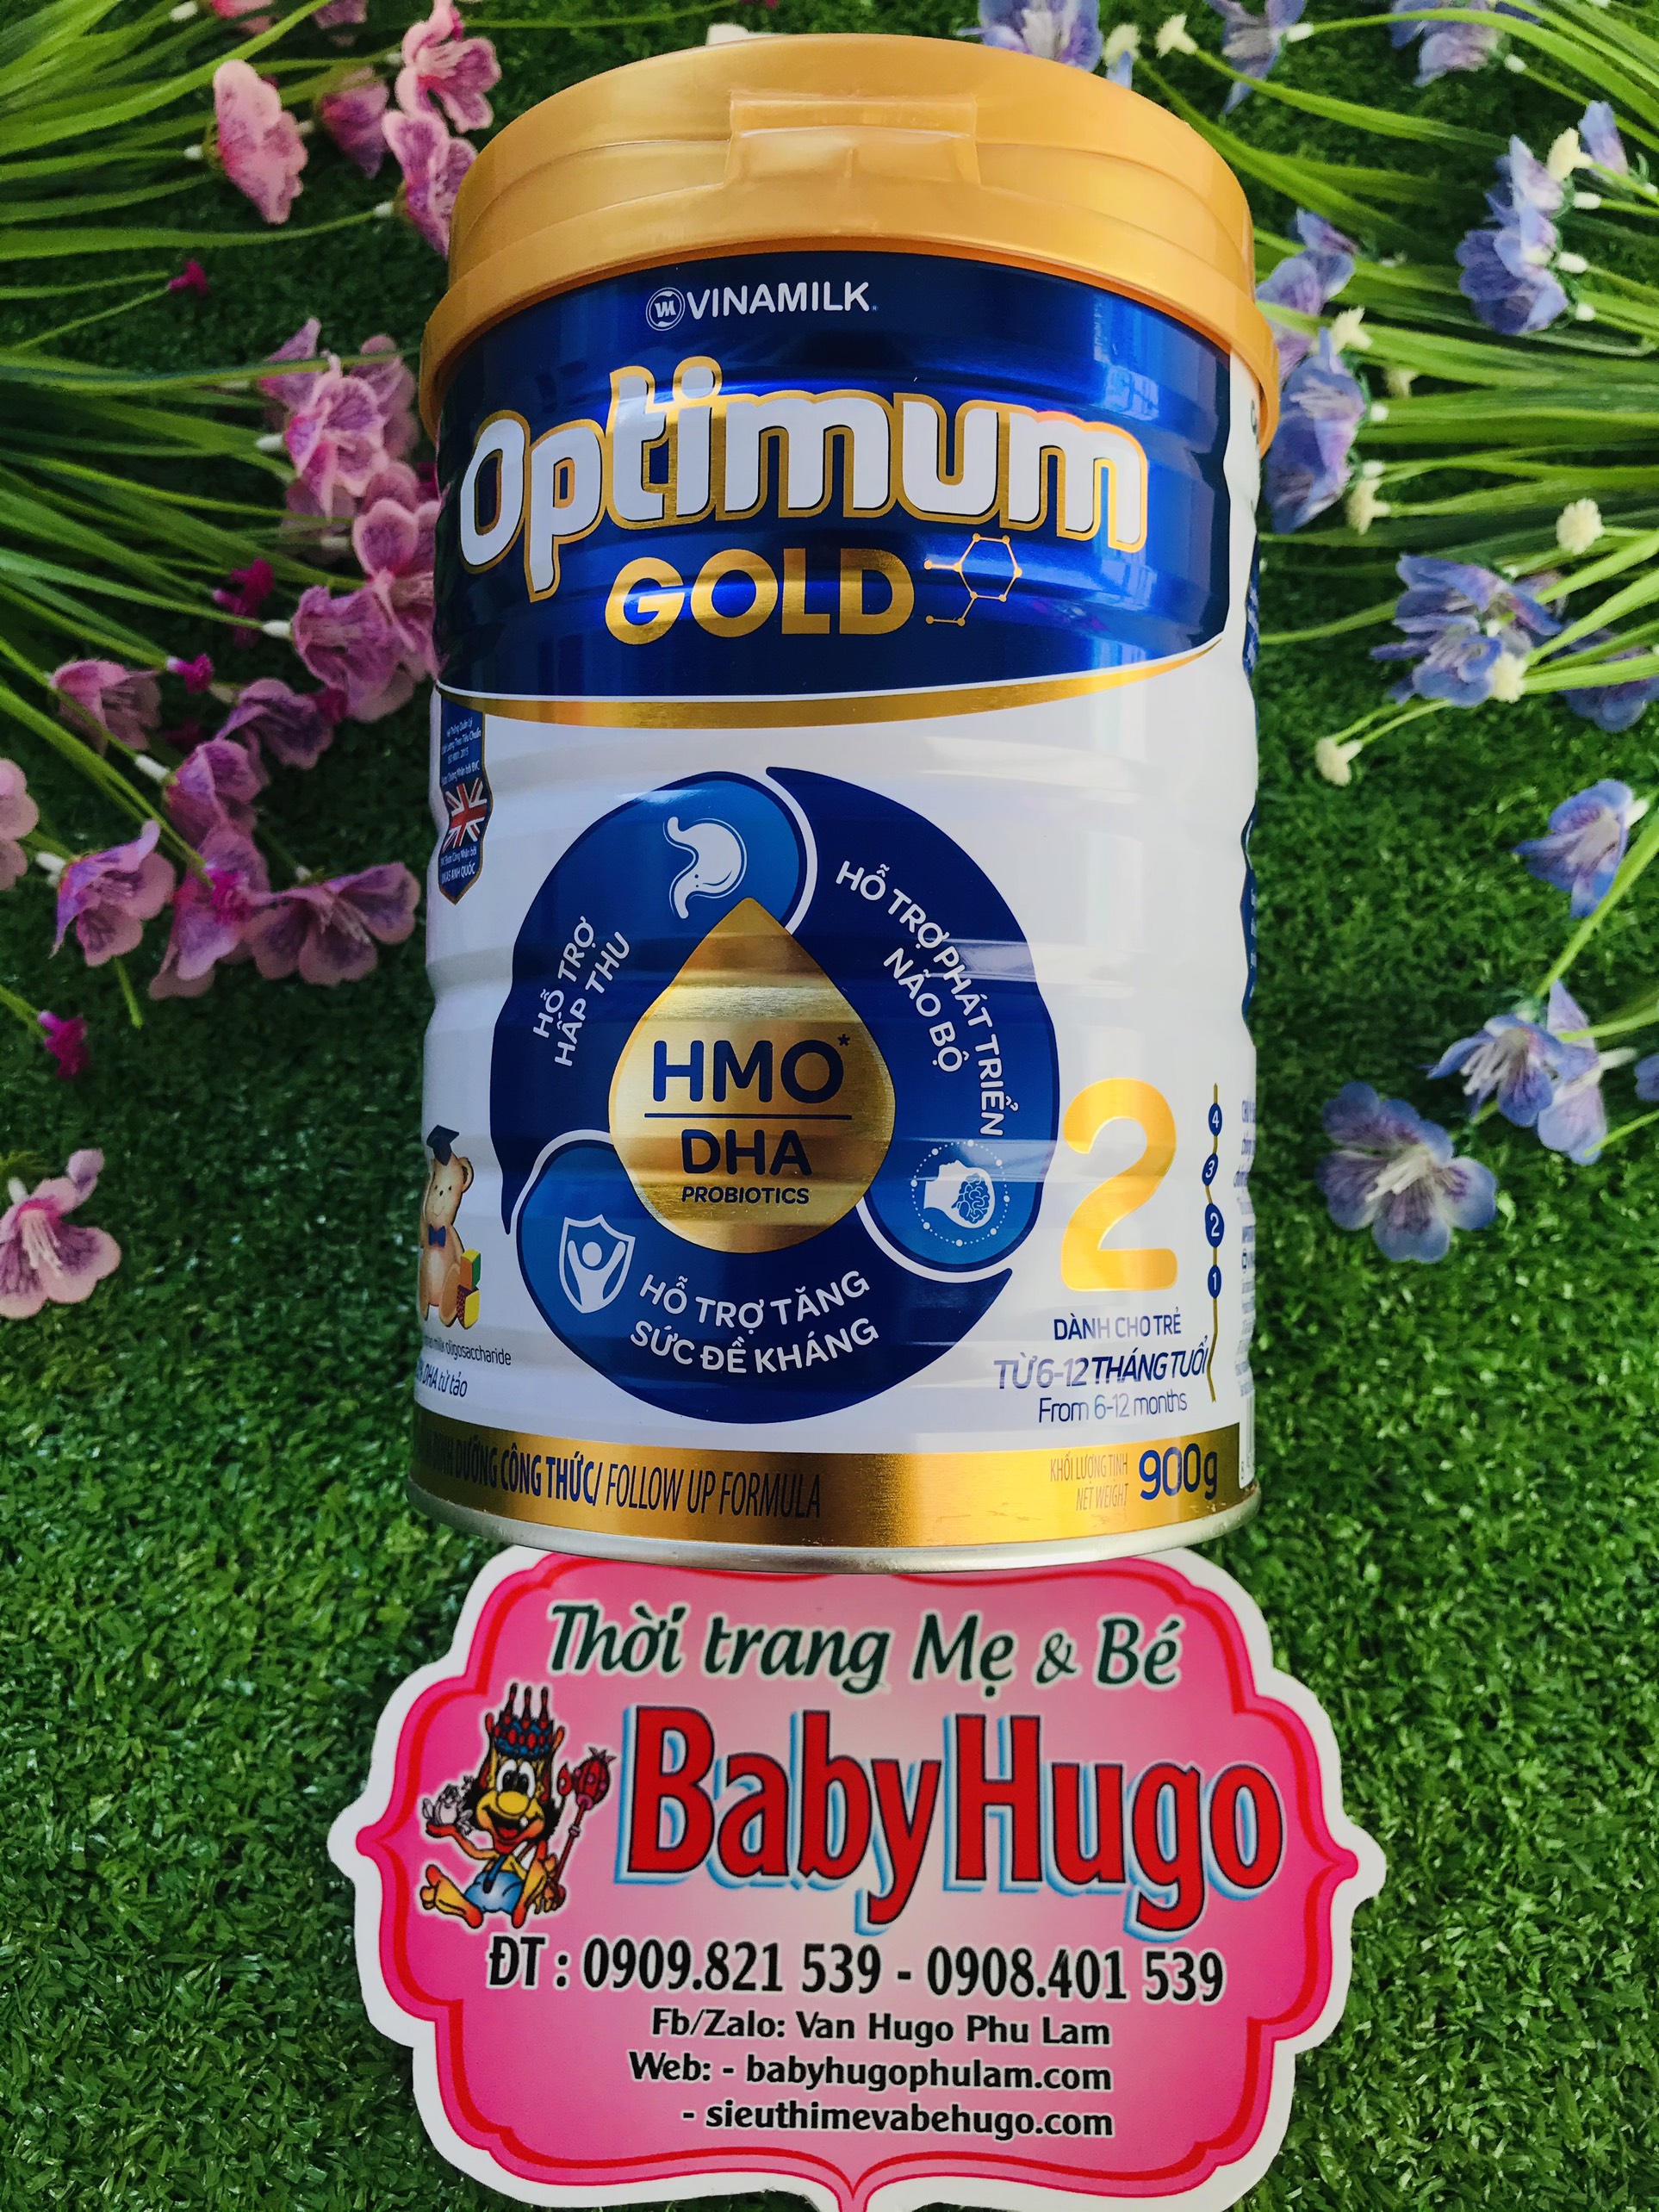 [DATE MỚI] Sữa bột Vinamilk Optimum Gold 2 900g (cho bé 6 - 12 tháng)